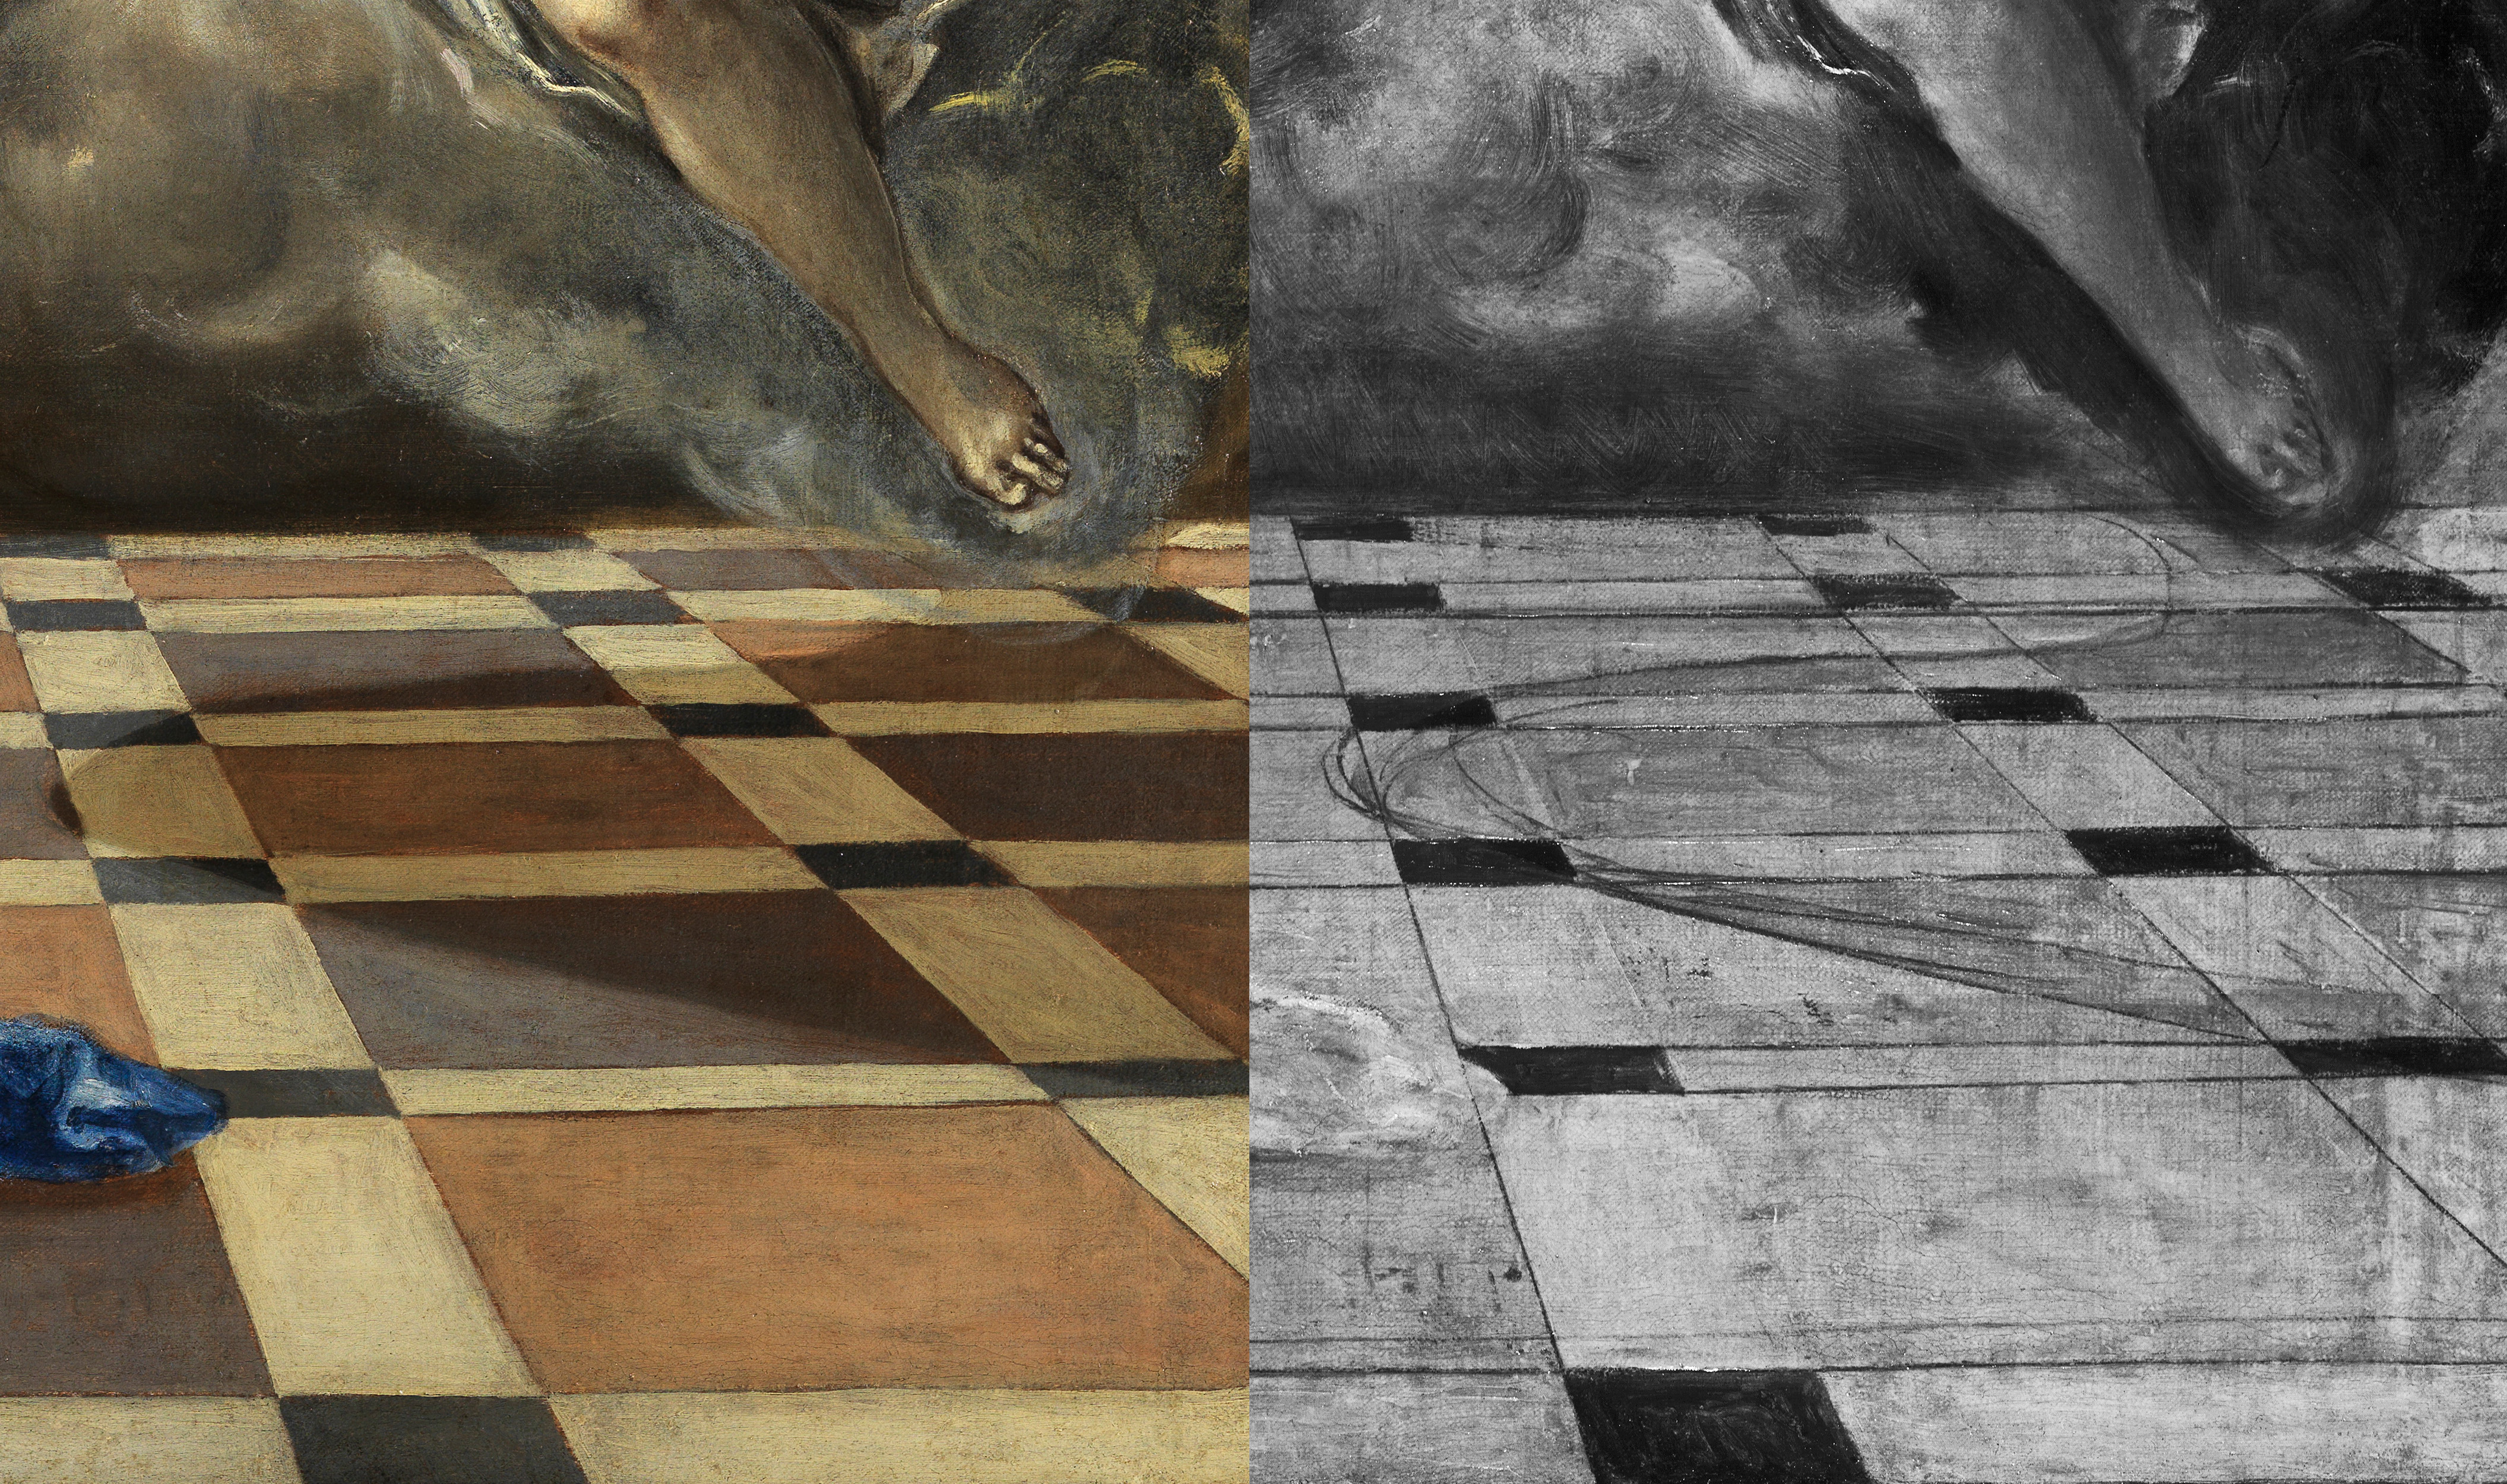 Detalle comparativo con la imagen infrarroja de la obra “La Anunciación” c.1576, de El Greco